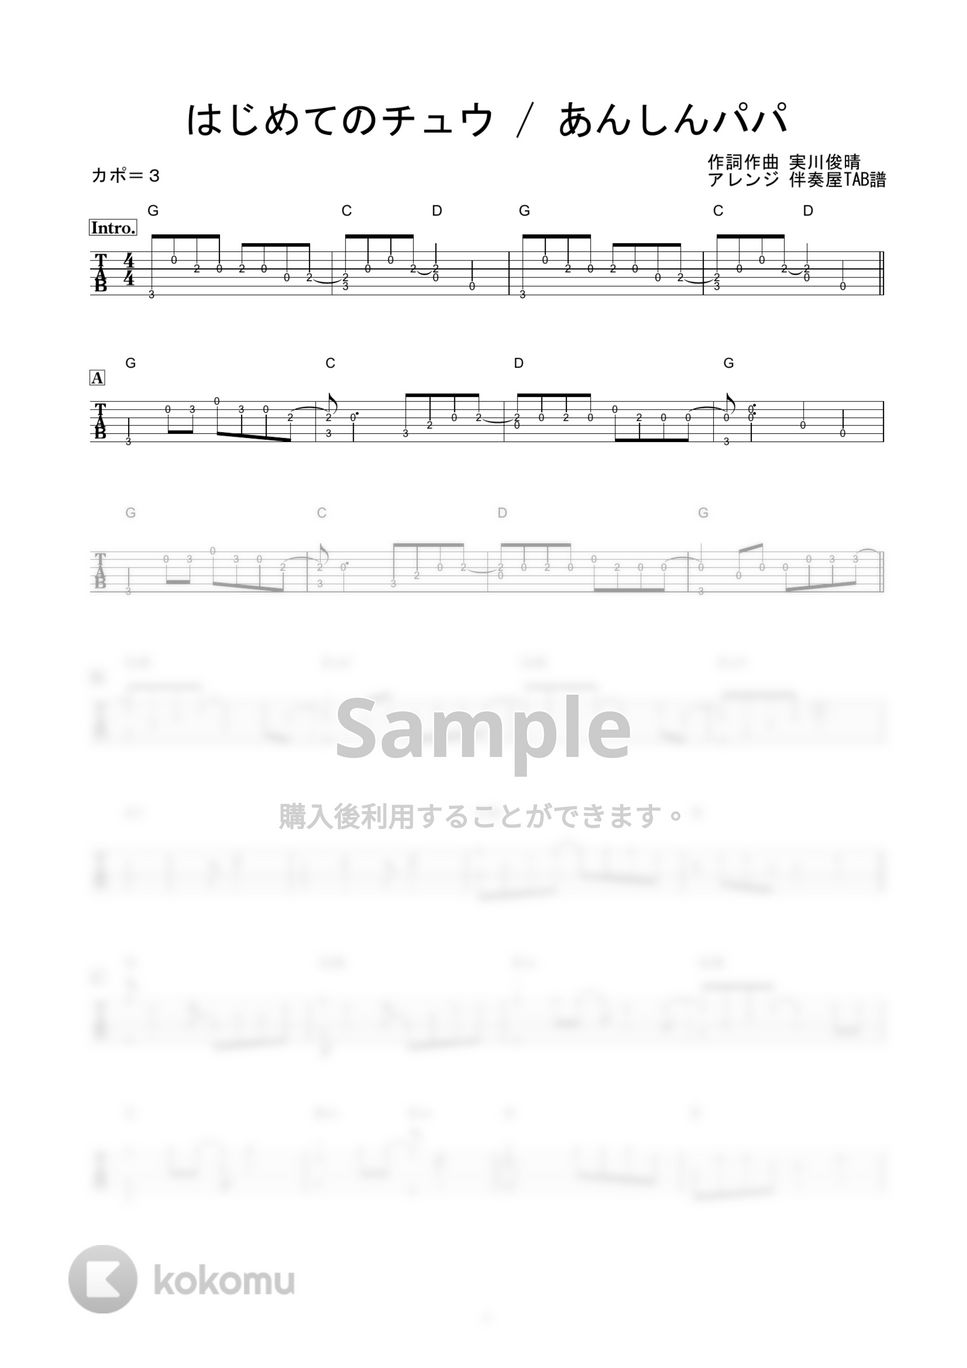 あんしんパパ - はじめてのチュウ (かんたんソロギター) by 伴奏屋TAB譜